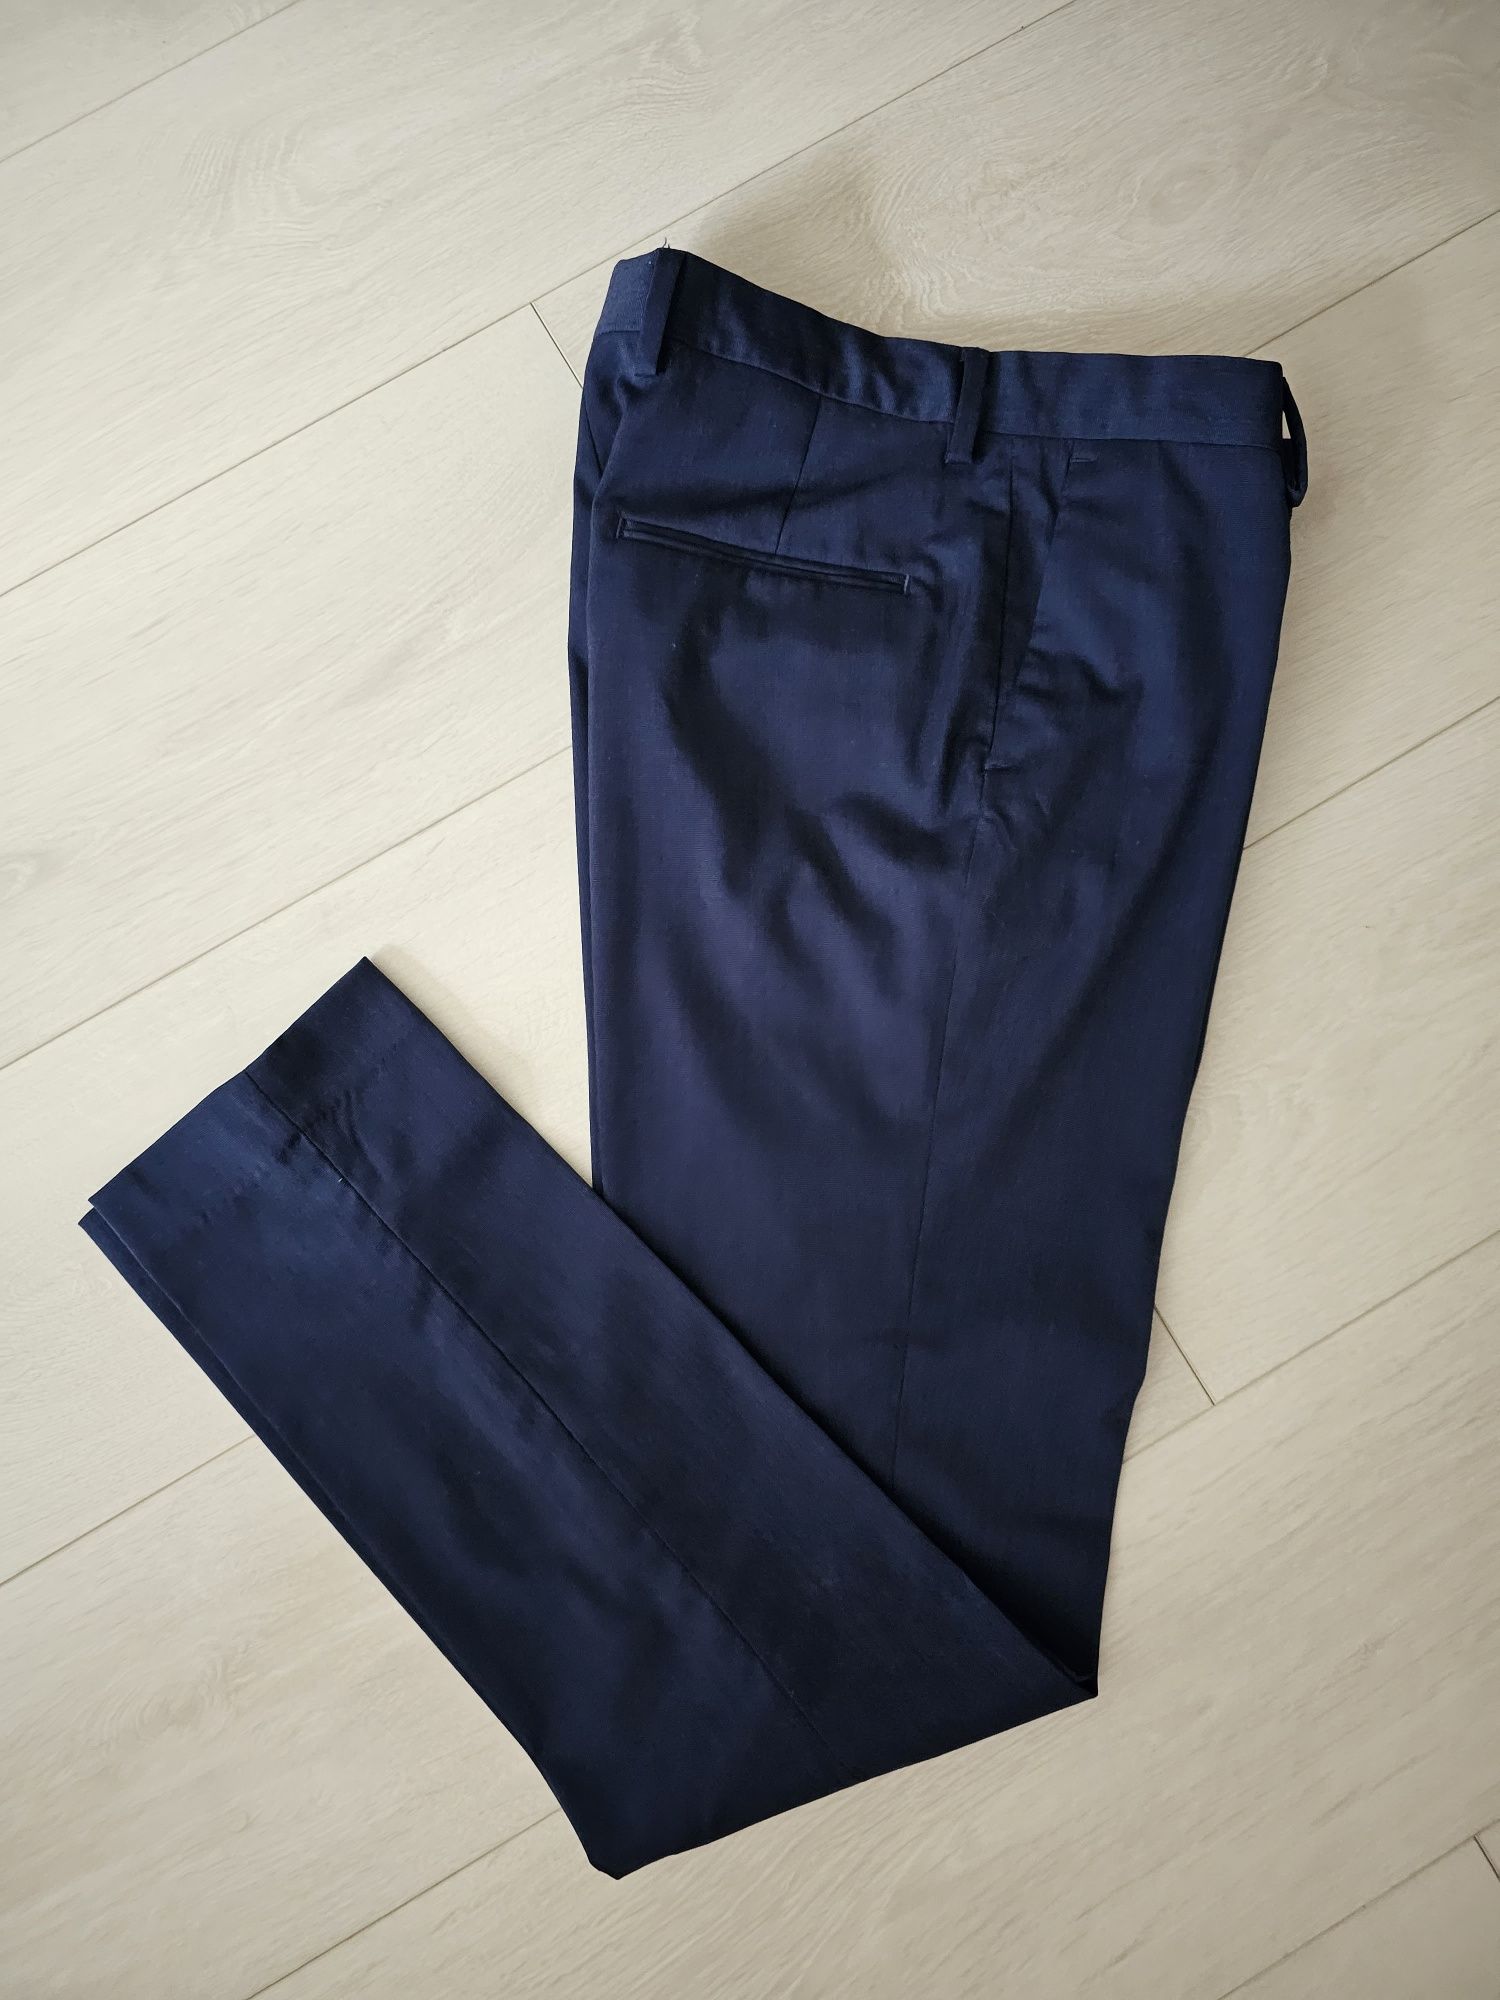 Pantaloni stofa barbati H&M, w44